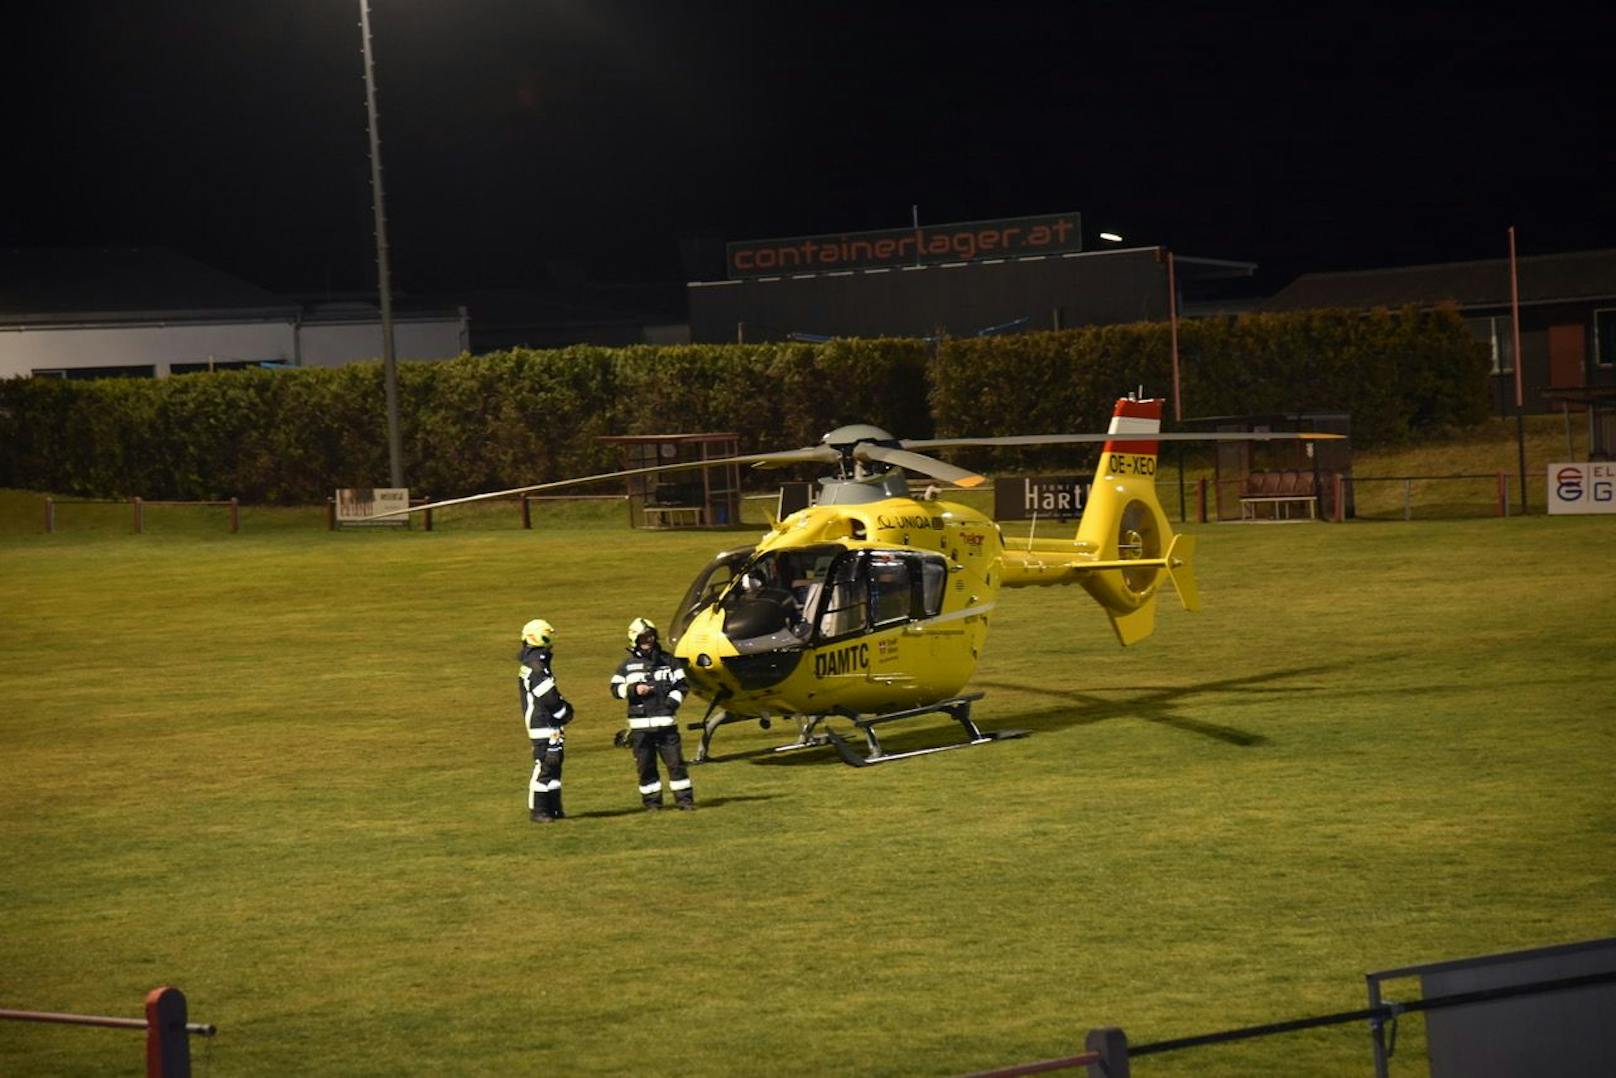 2 Helis waren angefordert worden. Ein Hubschrauber brachte ein Schwerverletzte ins Spital